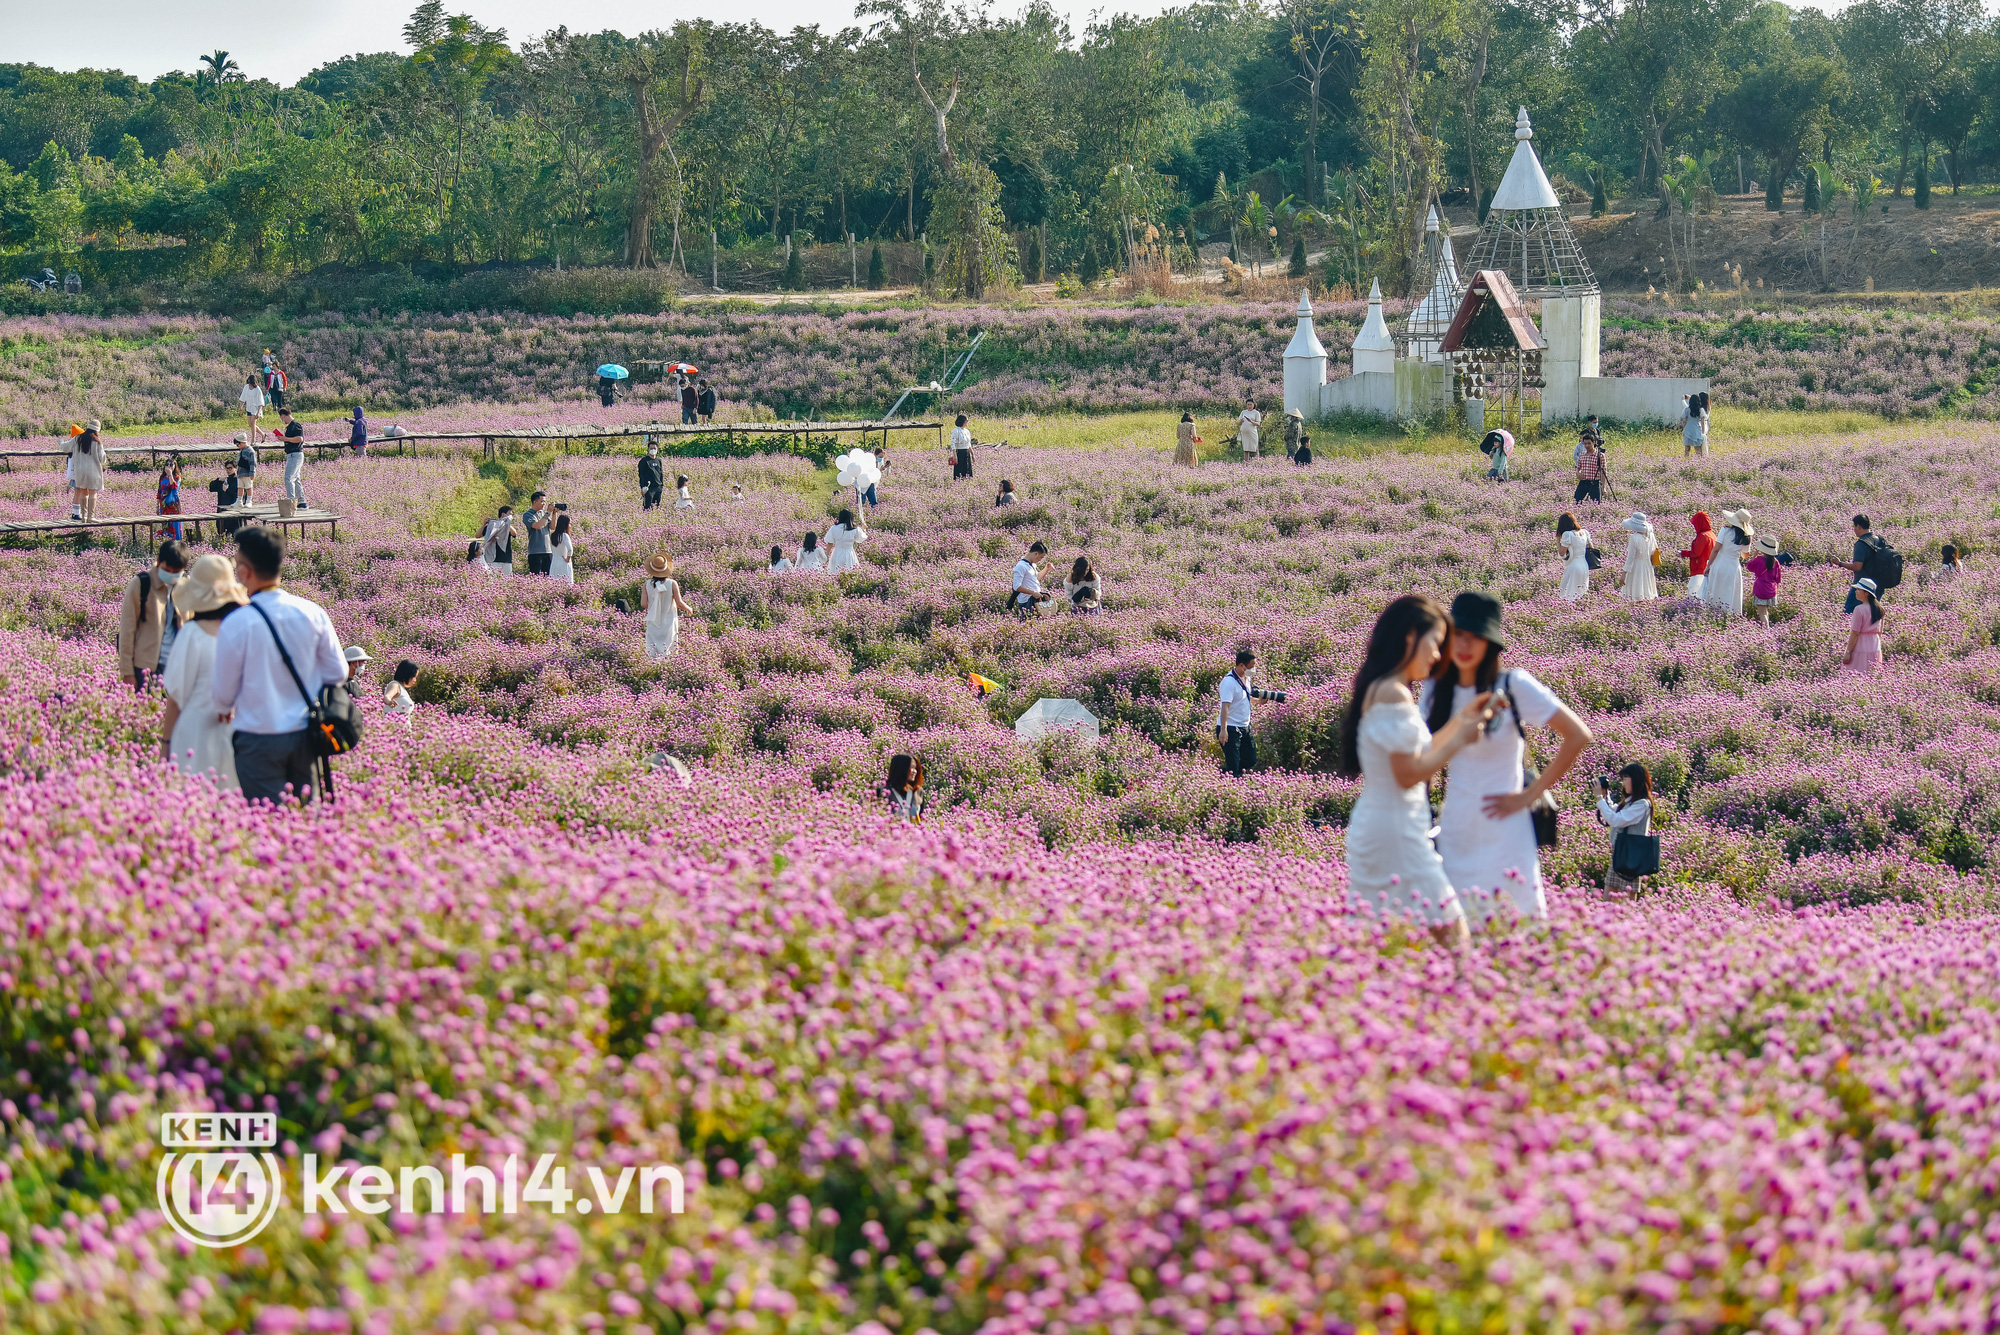 Ảnh: Điểm danh những vườn hoa hot nhất Hà Nội đang được giới trẻ rần rần kéo đến check in - Ảnh 11.